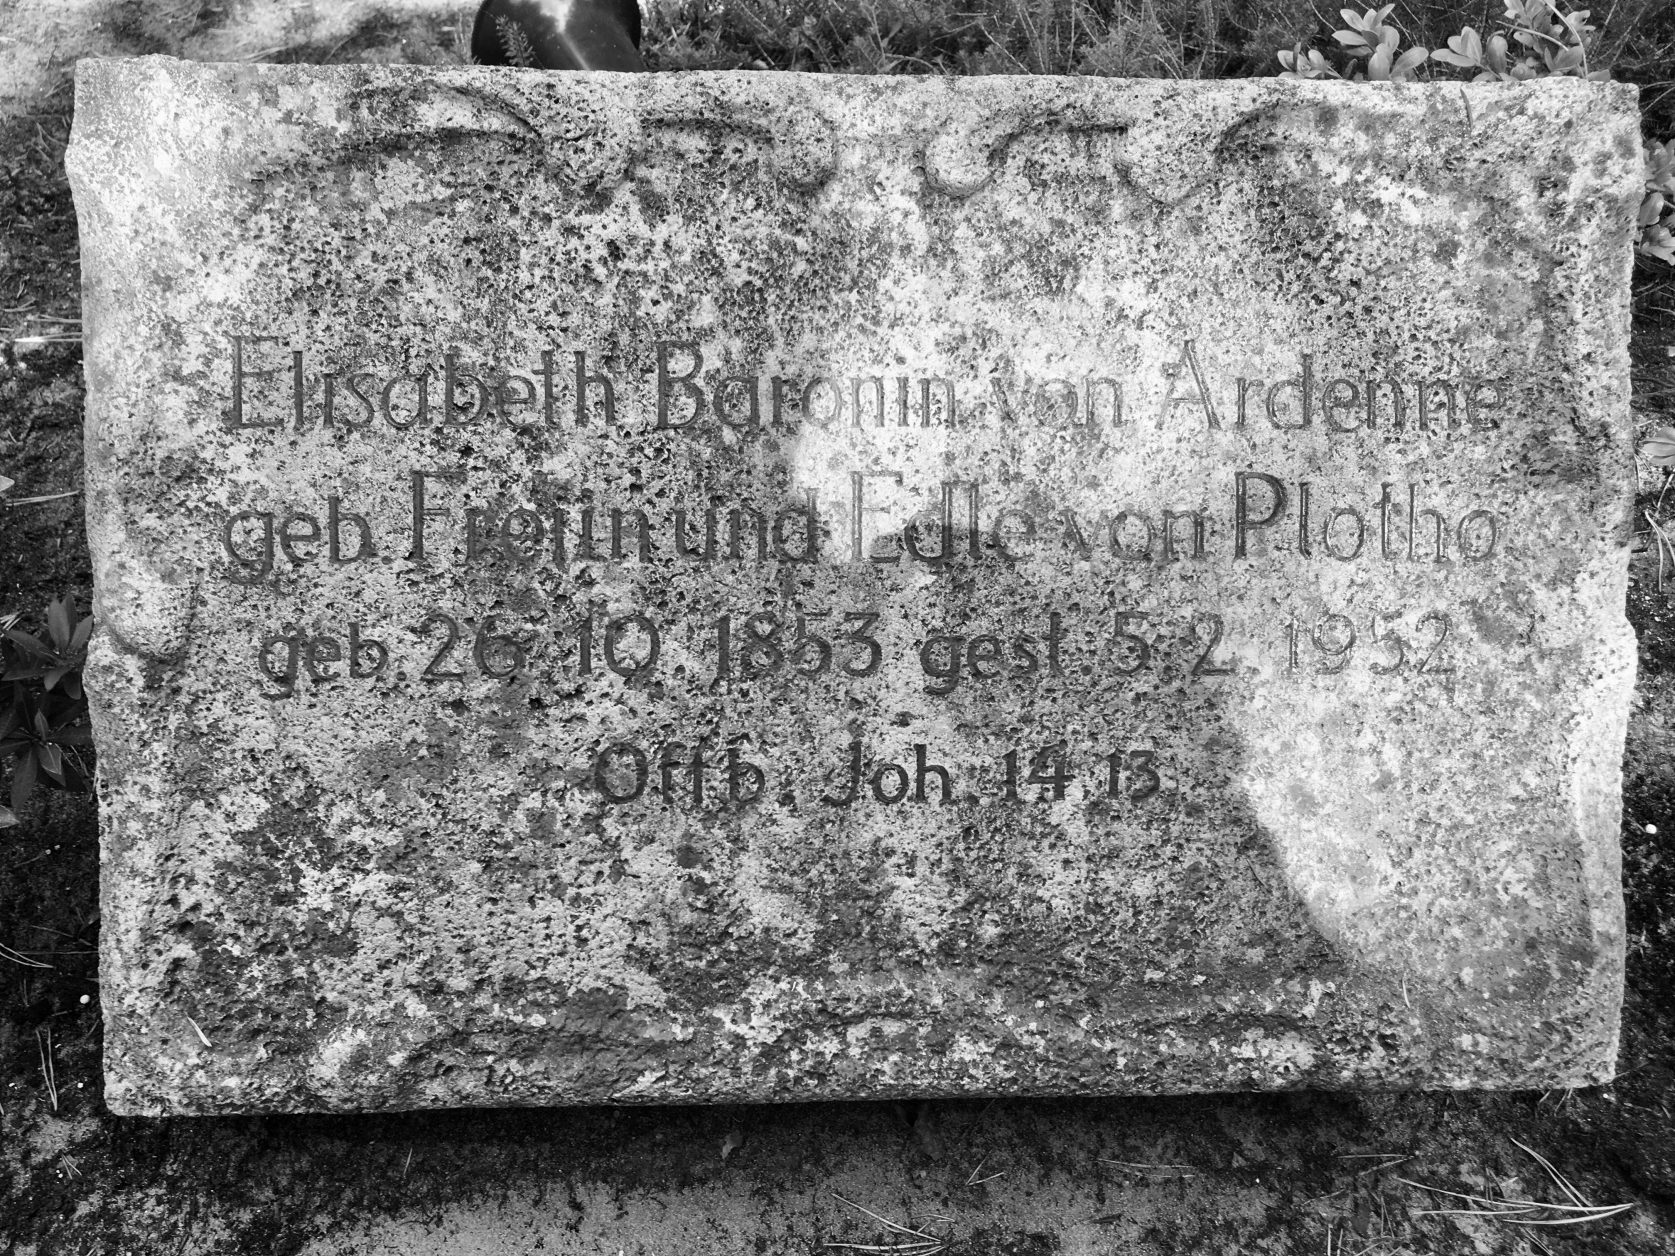 Grab von "Effi Briest" auf dem Stahnsdorfer Südwestkirchhof, Foto: Weirauch